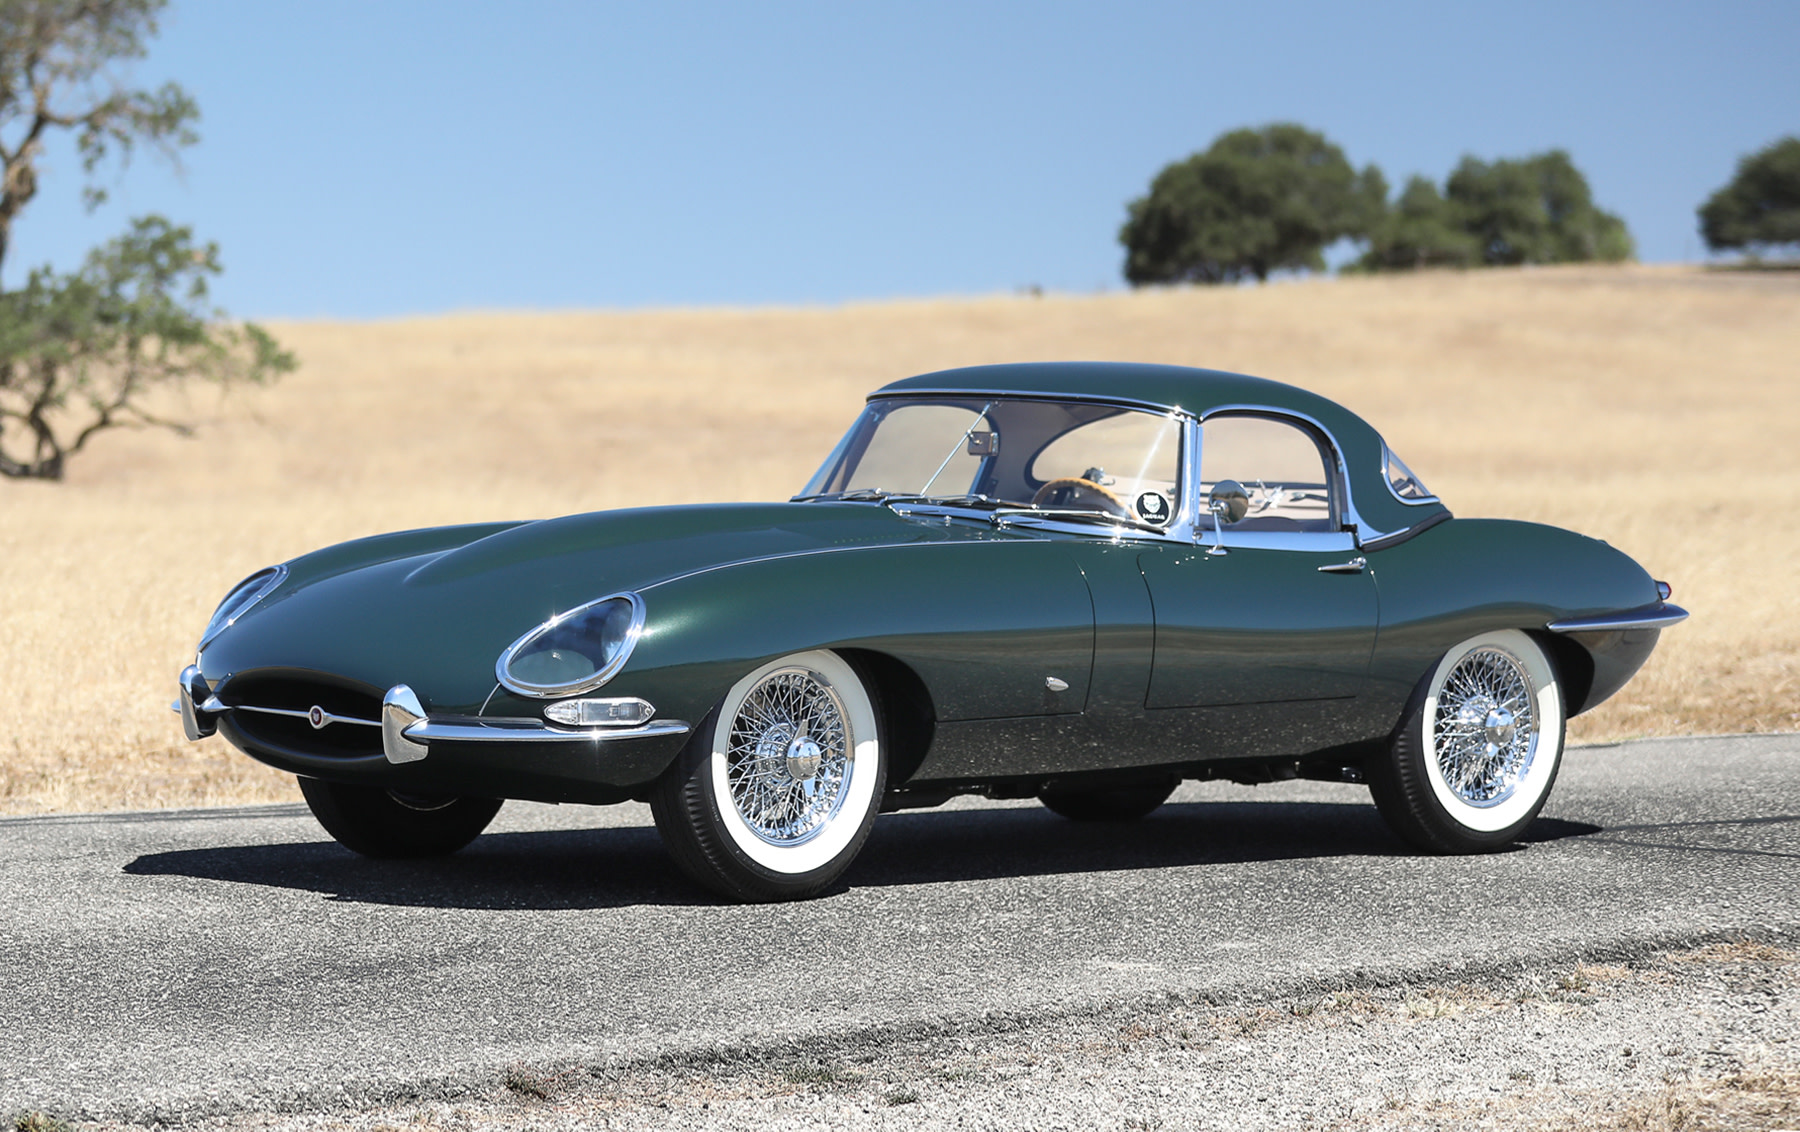 1961 Jaguar (Pre-65) E-Type - collectorscarworld